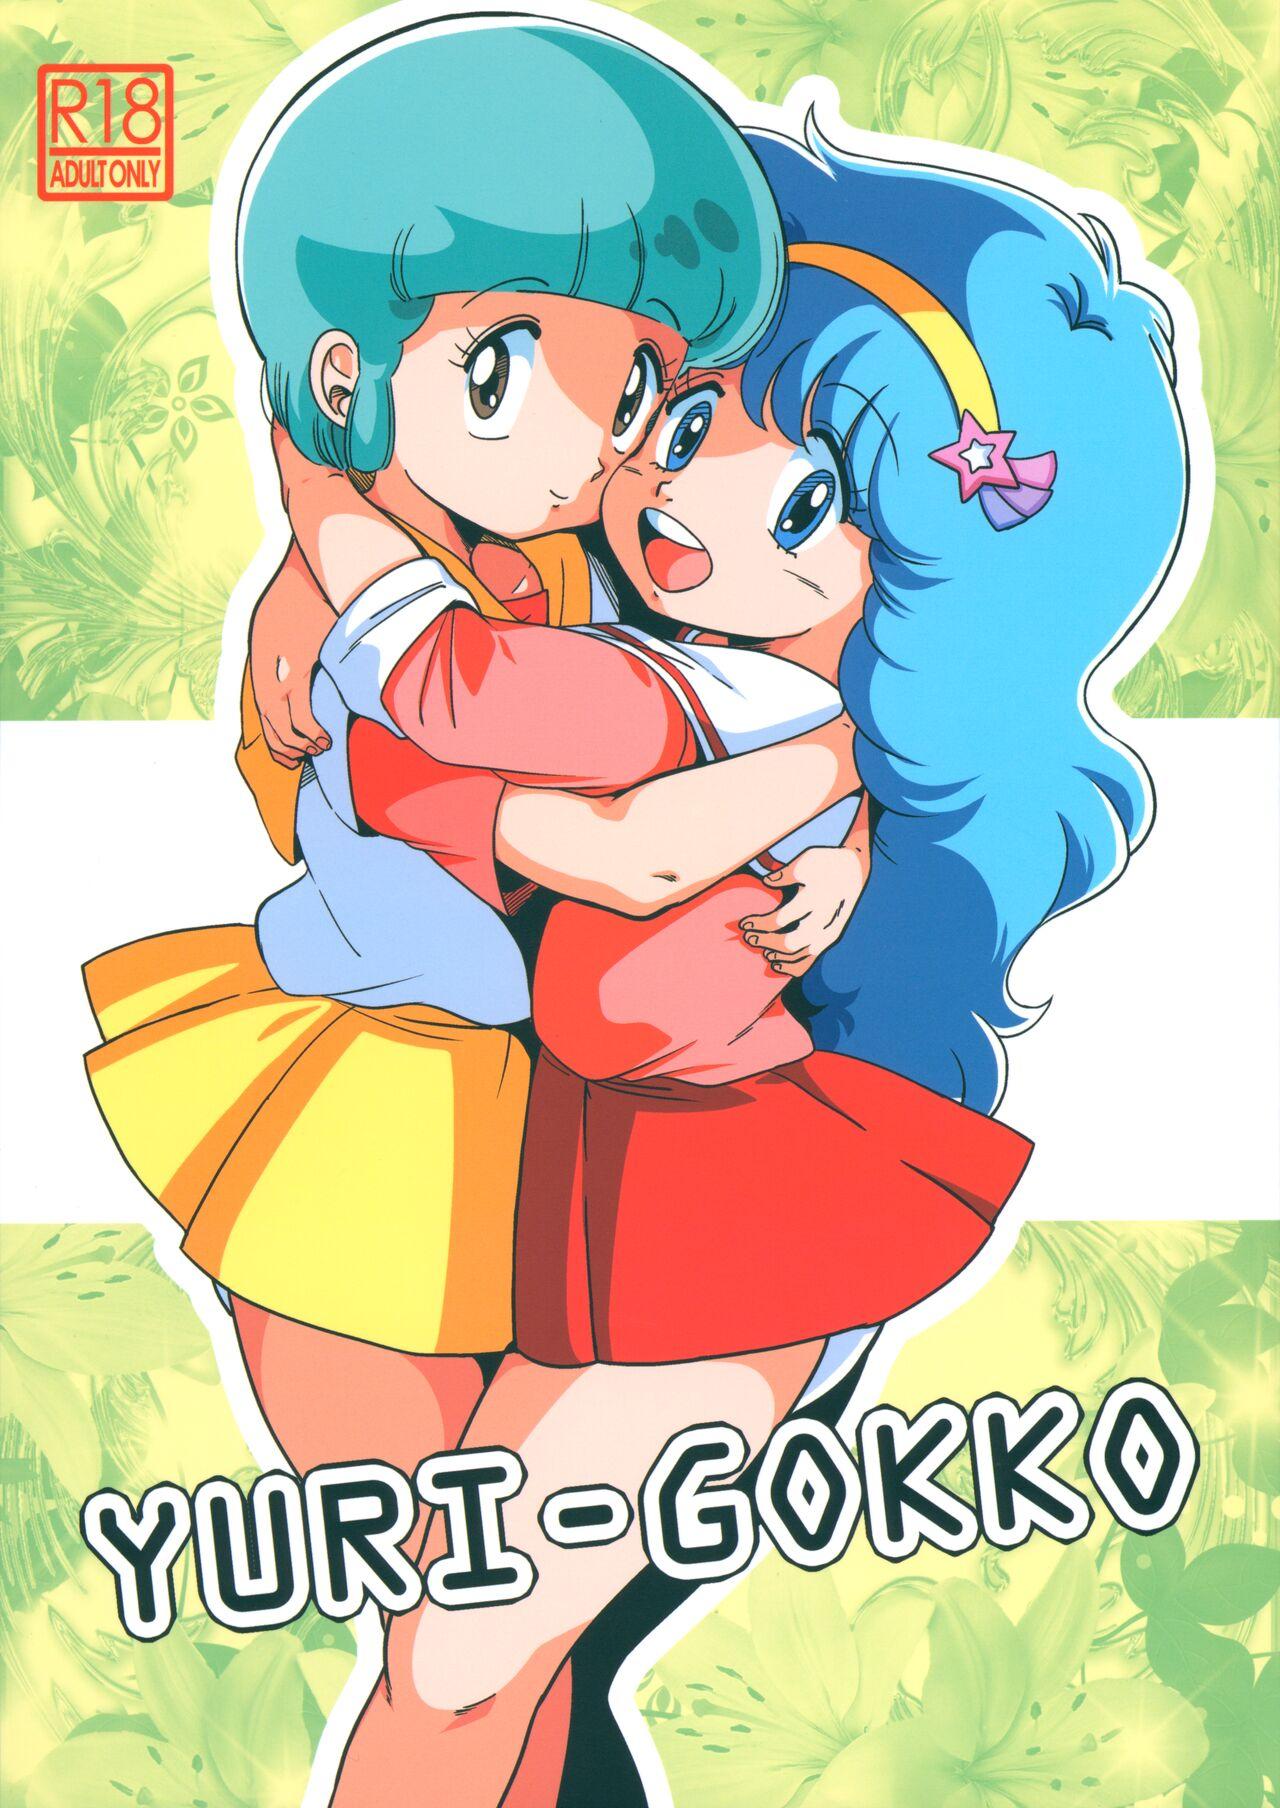 YURI-GOKKO 0